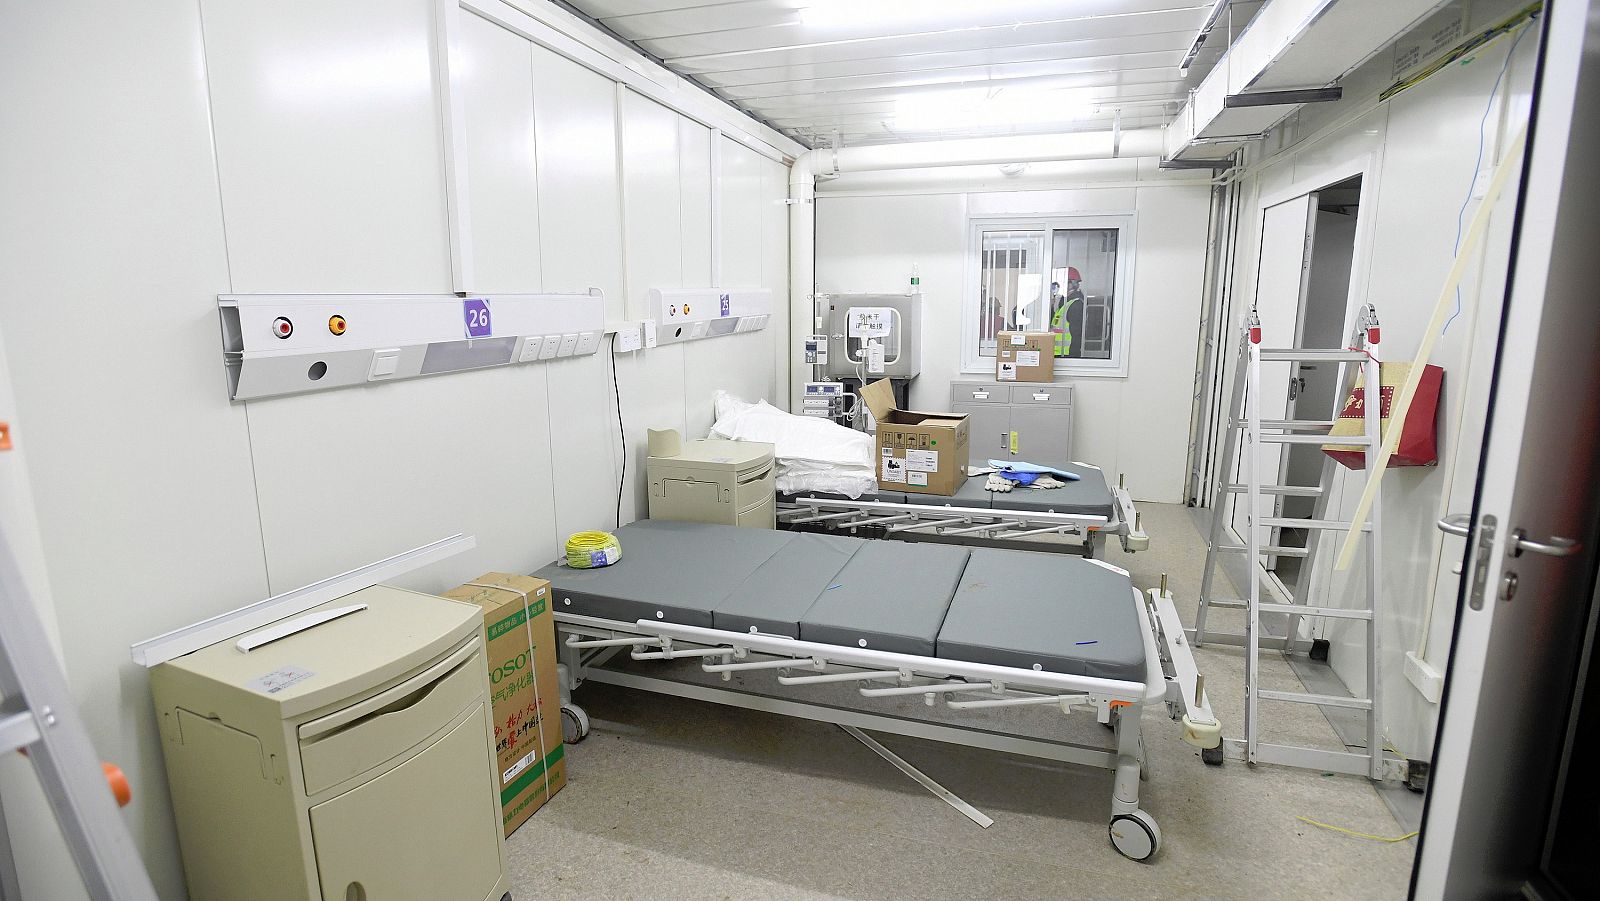 Asi es por dentro el nuevo hospital de Huoshenshan de Wuhan con capacidad para mil camas, y habitaciones que tienen caja desinfectante de alimentos. Serán sanitarios del Ejército chino los que lo gestionen... Su construcción en tiempo record ha causa